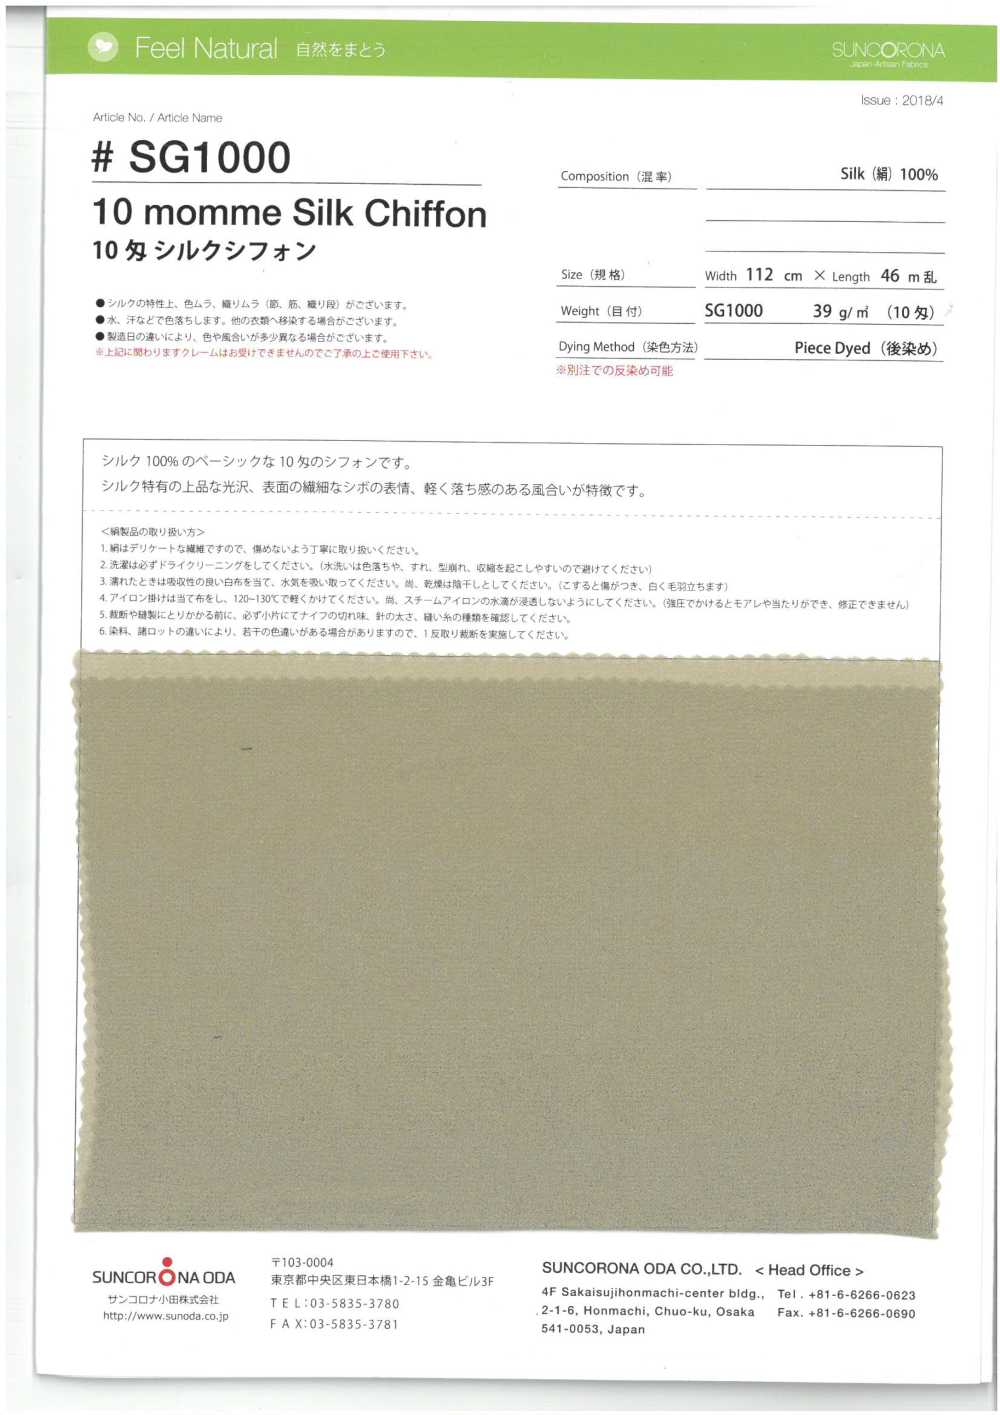 SG1000 10 Momme Silk Chiffon[Textile / Fabric] Suncorona Oda